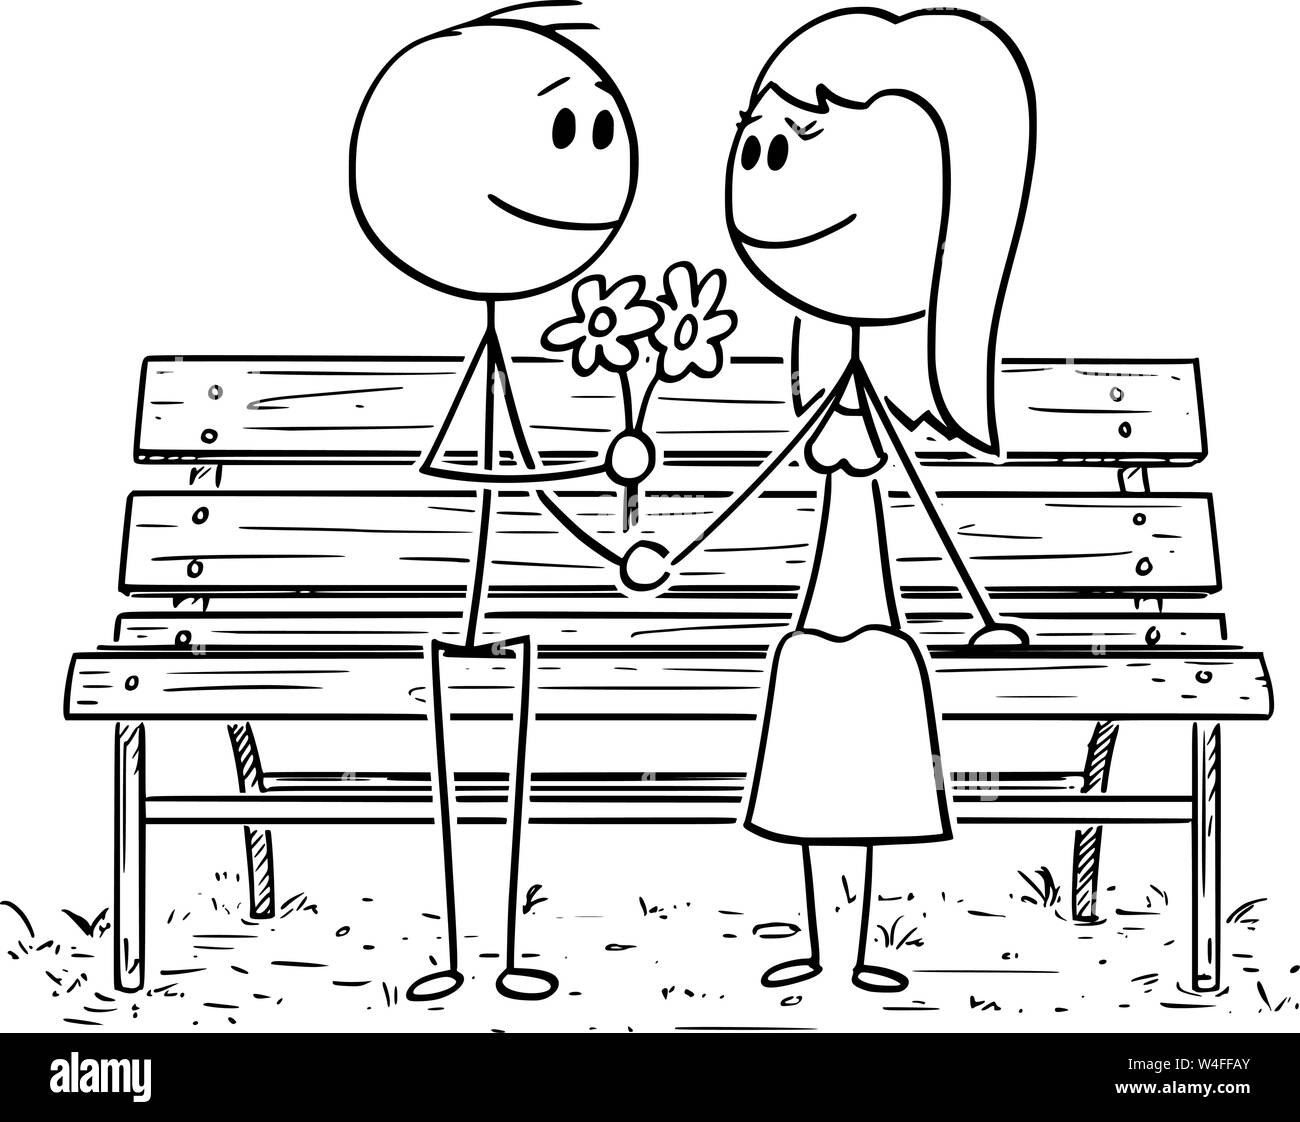 Cartoon stick Zeichnung konzeptuelle Abbildung: Romantisches Paar sitzen  auf einer Parkbank oder Sitz, der Mensch ist mit Blumen zu Frau  Stock-Vektorgrafik - Alamy